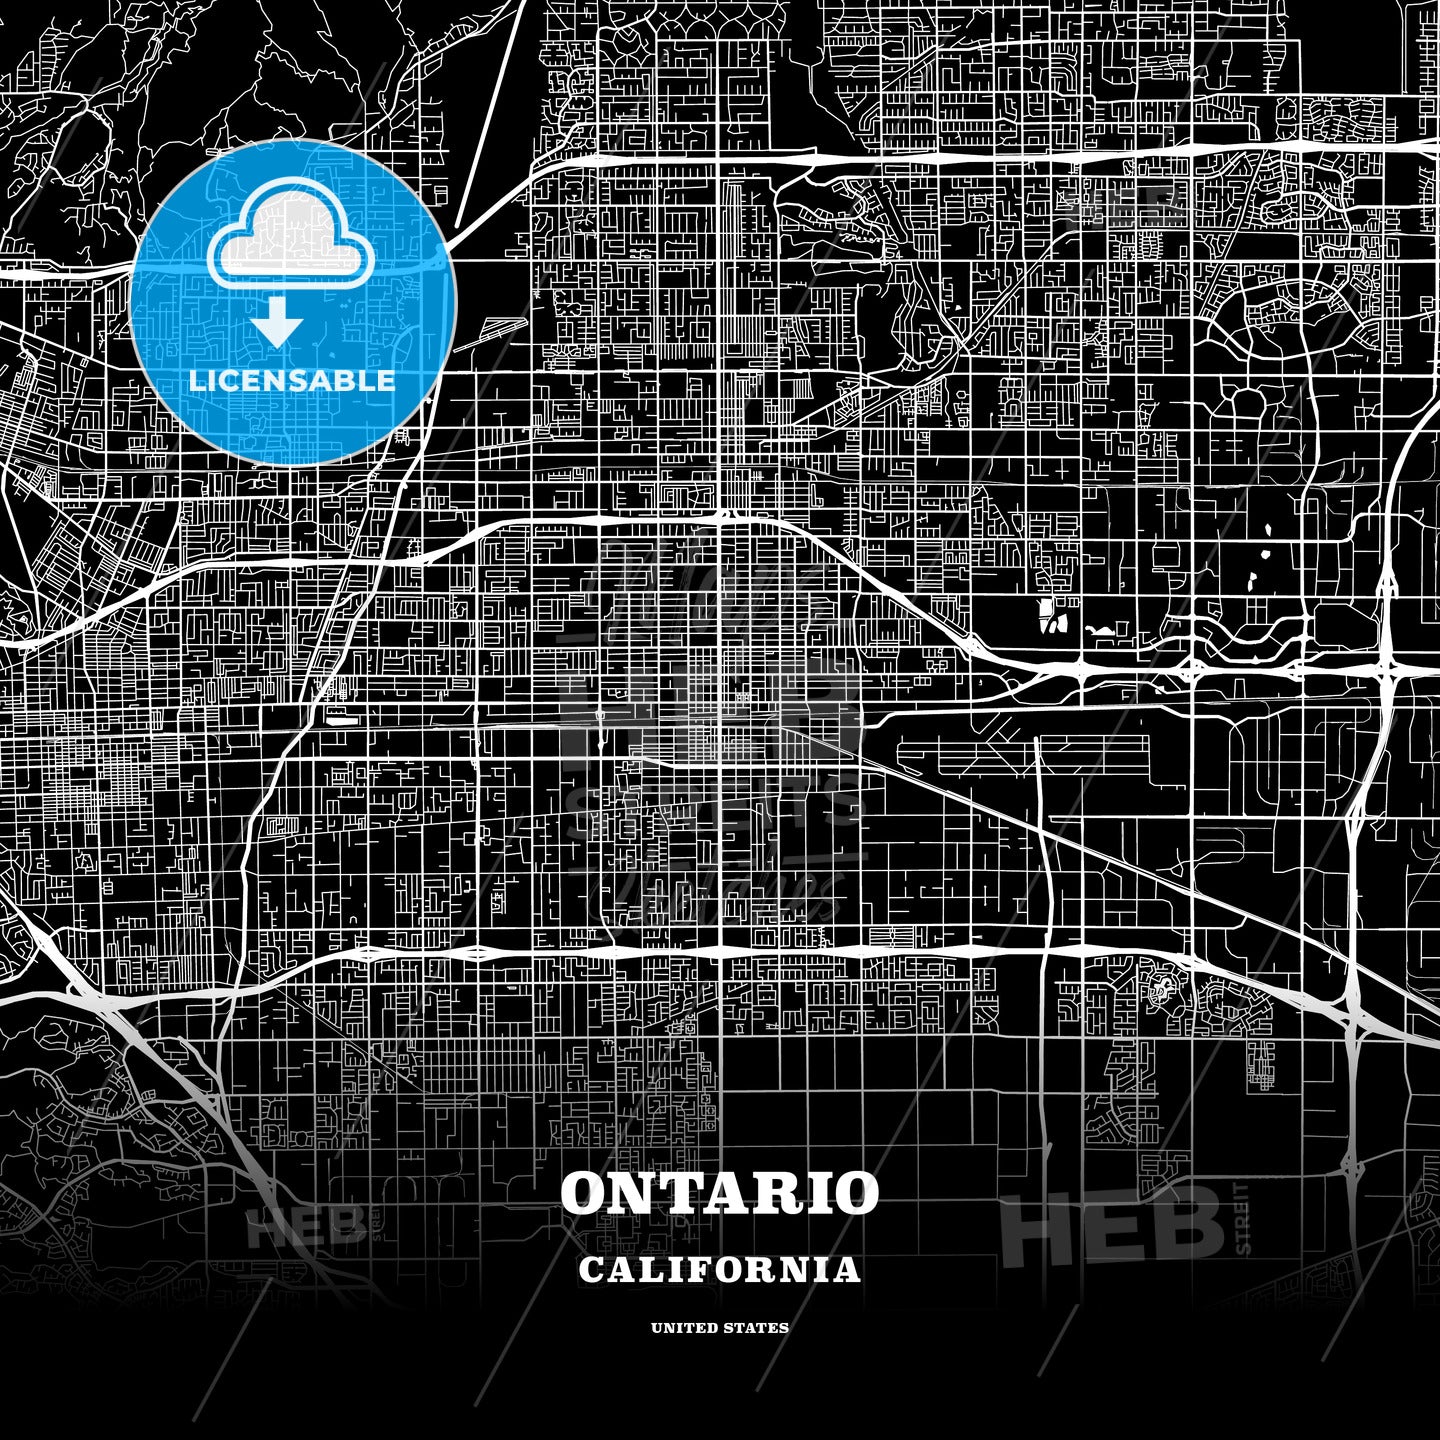 Ontario, California, USA map